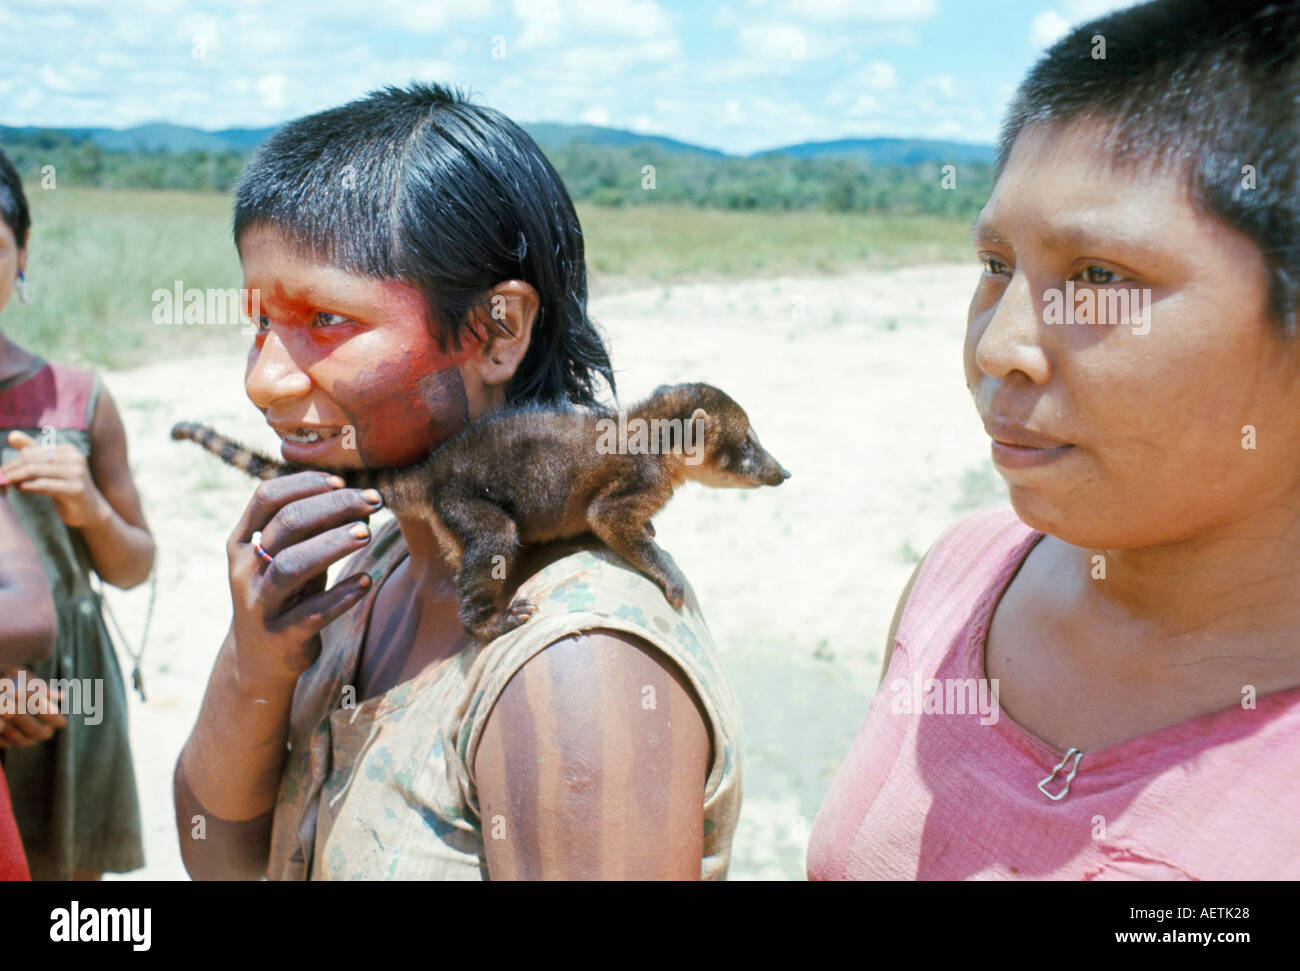 Gorotire Indian girl with animal coati Brésil Xingu Amérique du Sud Banque D'Images